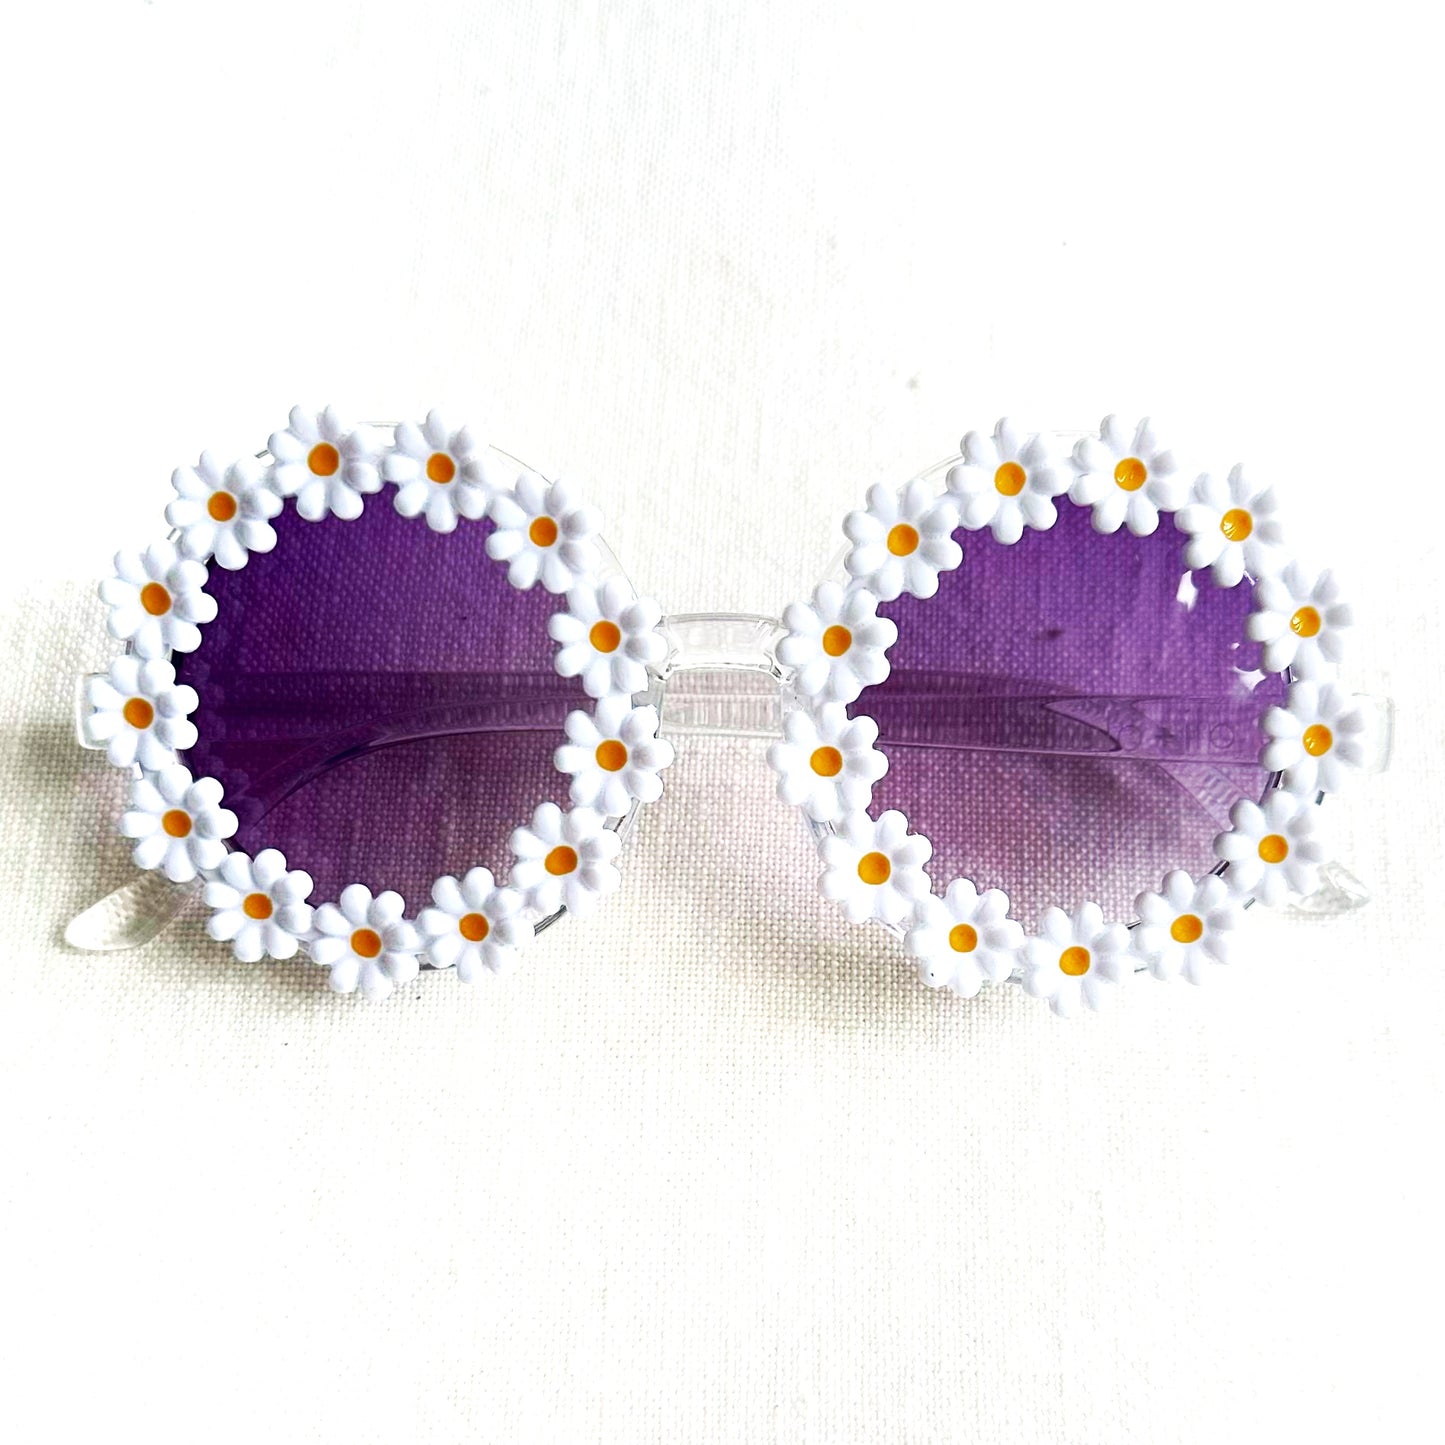 Ali+Oli Sunglasses for Kids (Daisy White)